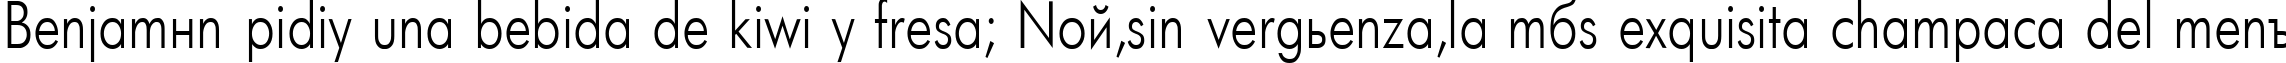 Пример написания шрифтом Futuris80n текста на испанском